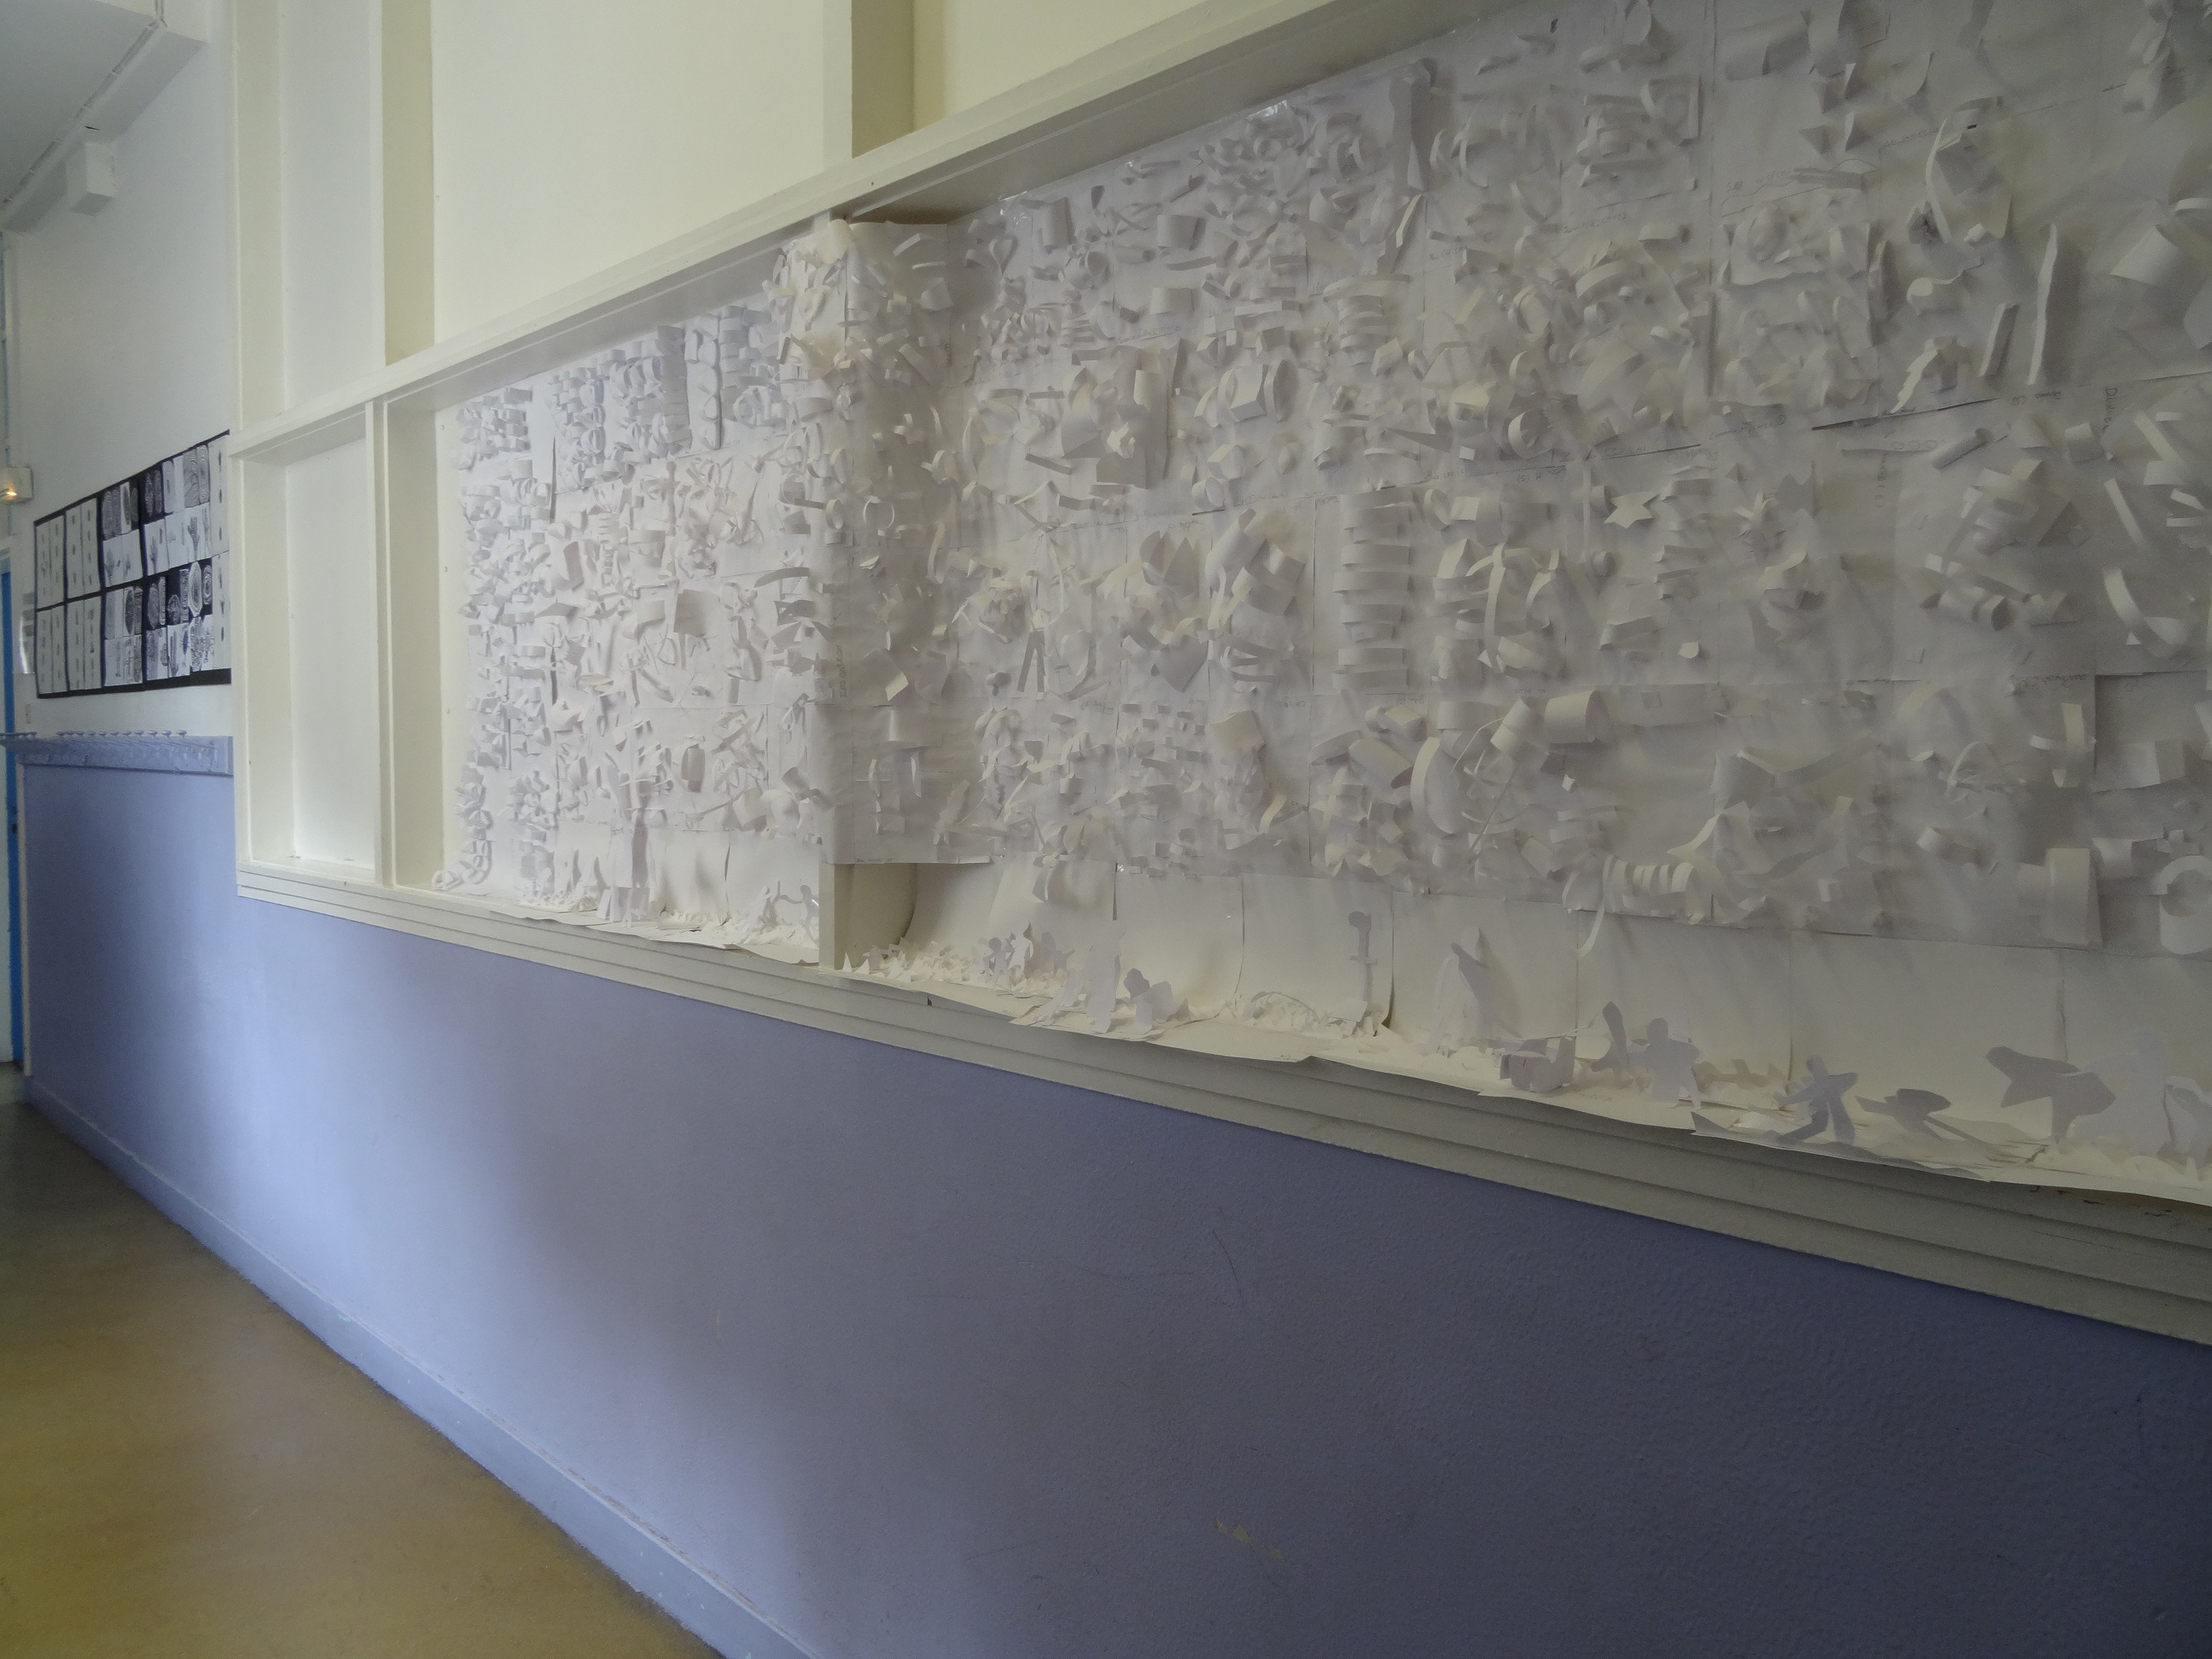 Dans un couloir de l'école élémentaire Keller (11e) est affichée une fresque blanche représentant toutes formes de paysages en papier, inspirée de la vidéo de l'artiste Grégory Chatonsky.